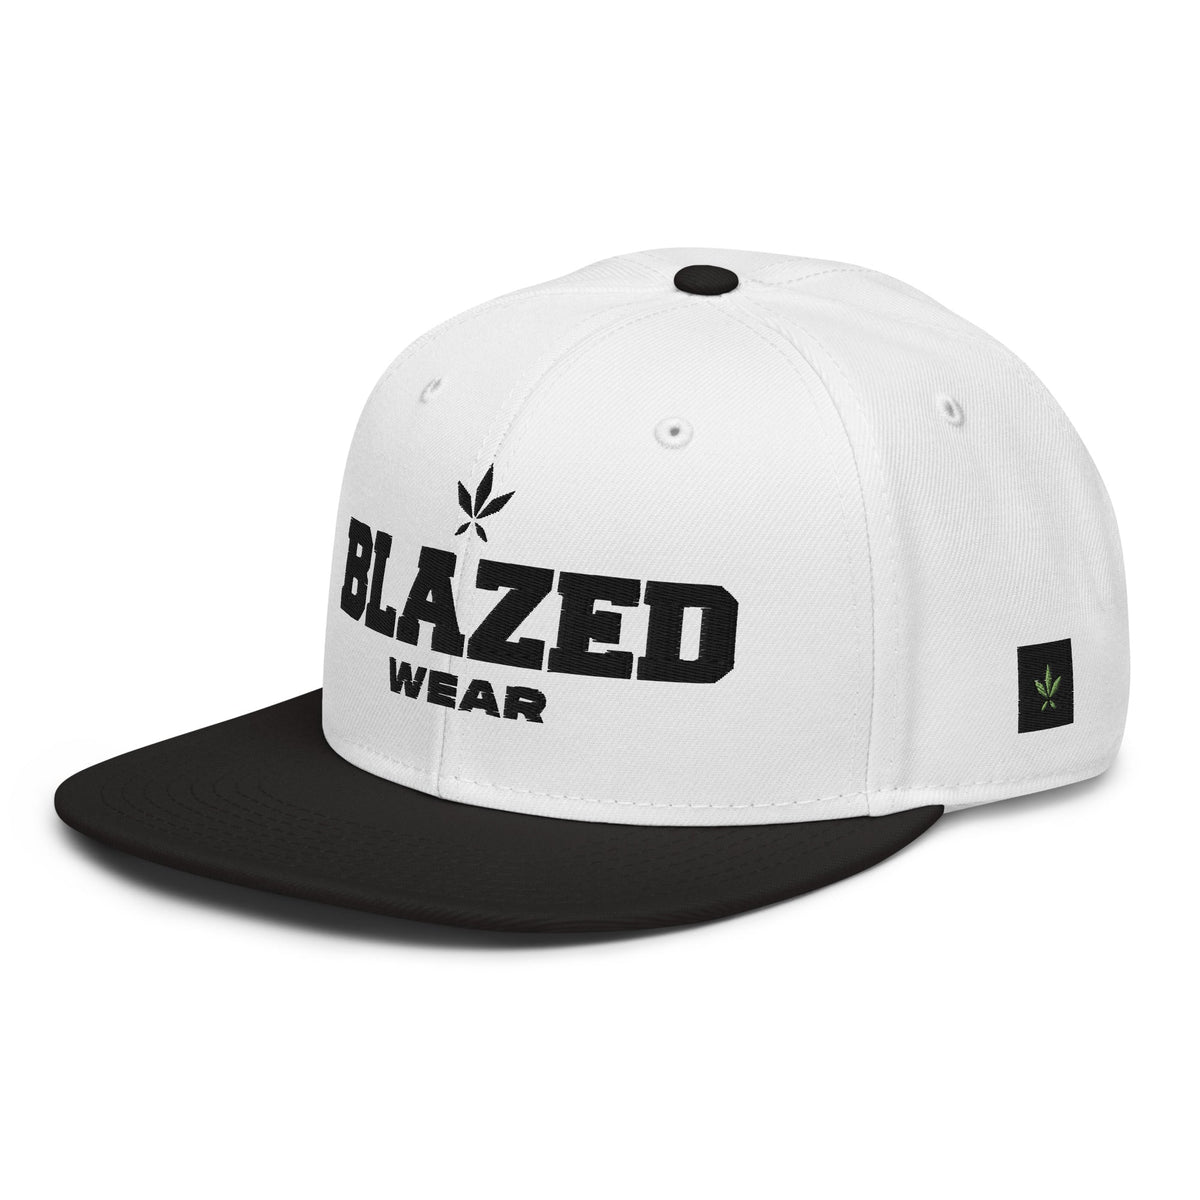 Blazed Wear Classic Snapback Cap - White/Black - Blazed Wear